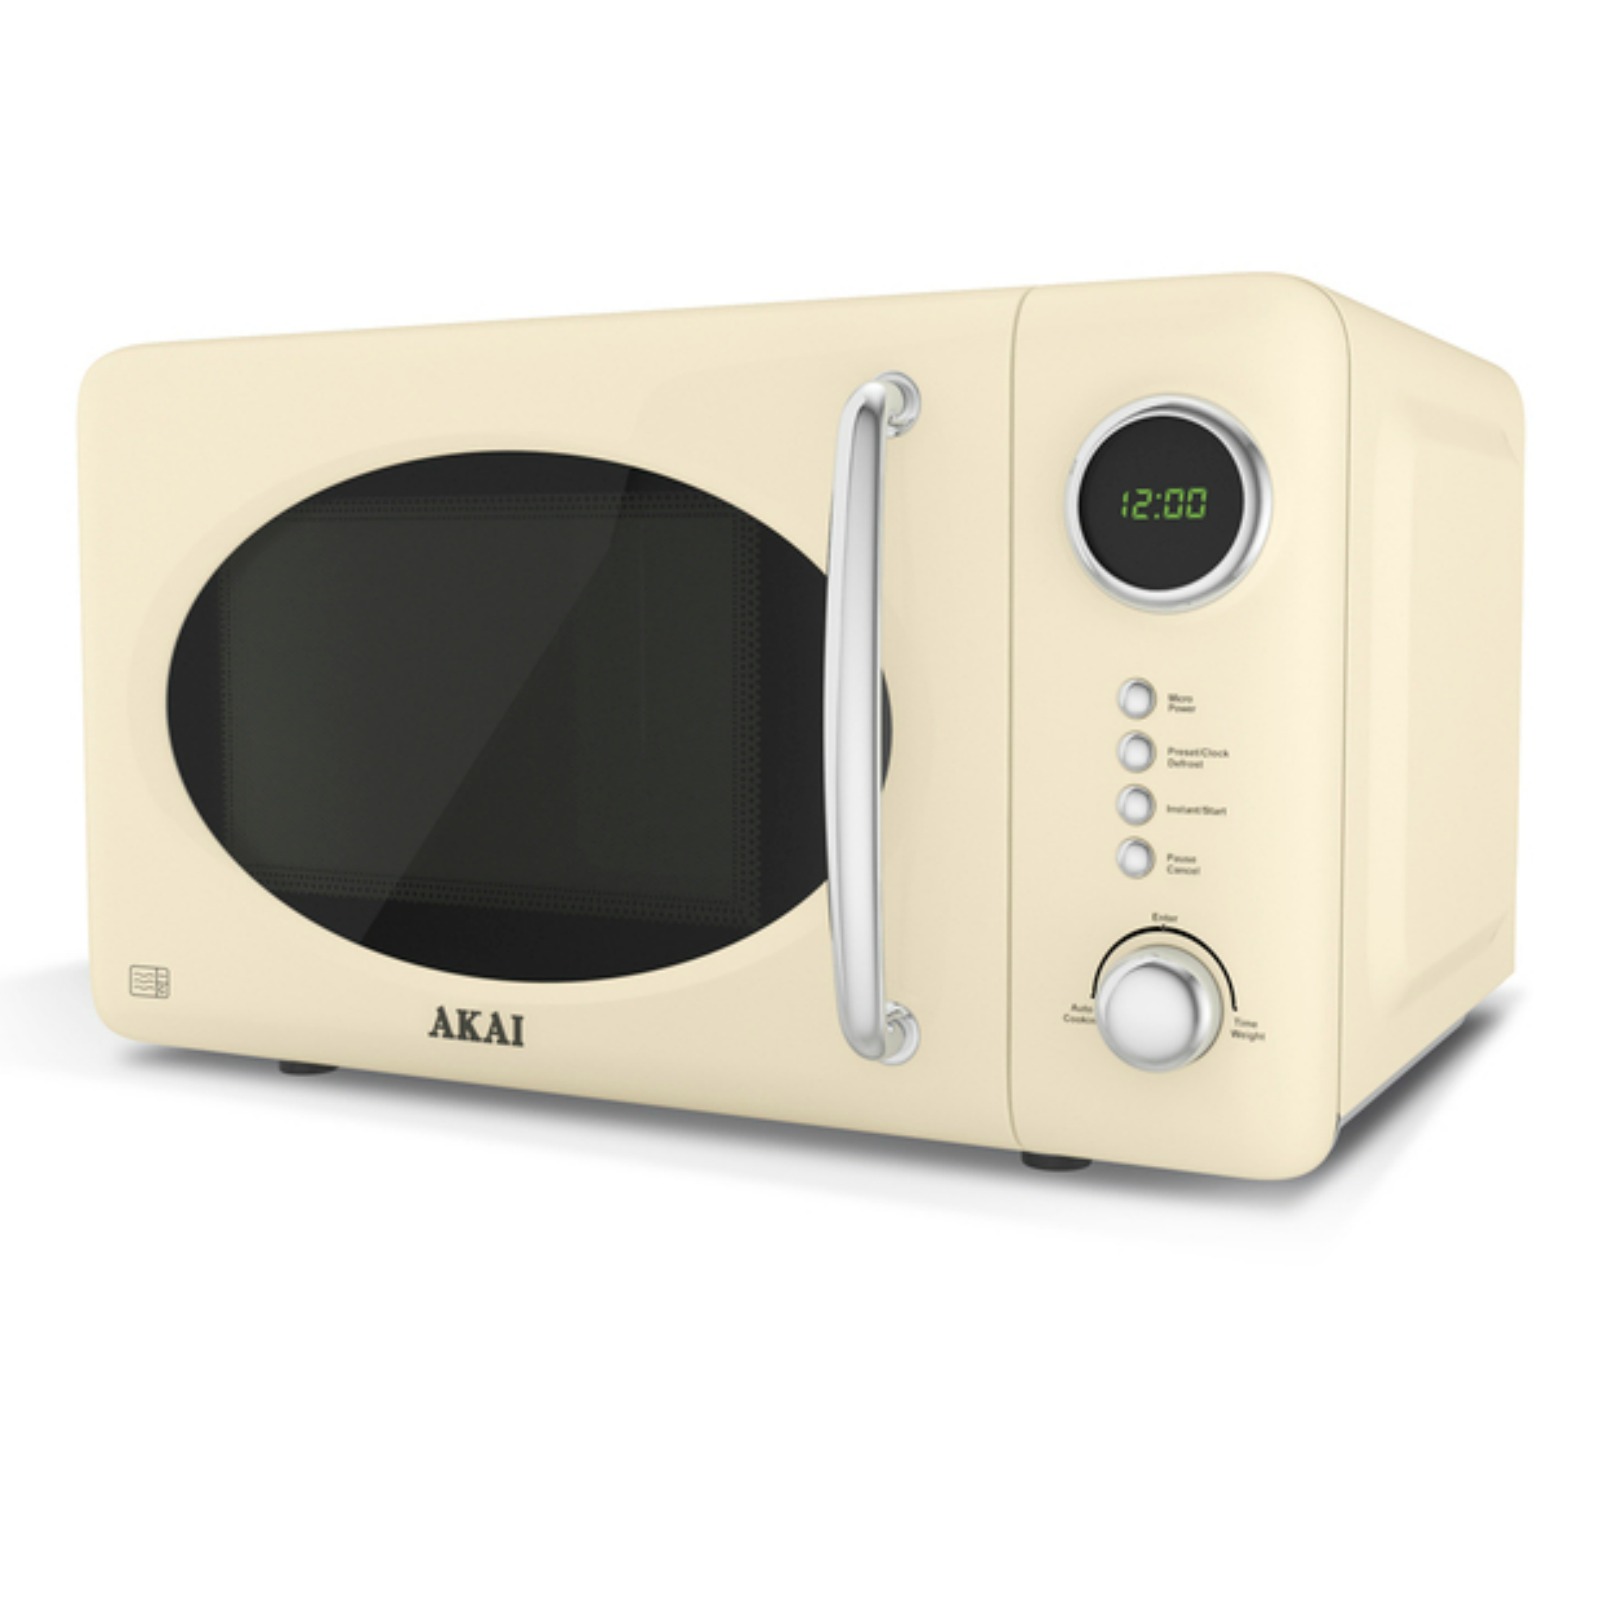 Микроволновая печь dexp купить. Микроволновая печь DEXP EC-70. Микроволновая печь Akai me1701b. Akai 23 литра микроволновая печь. Микроволновая печь Xiaomi Qcooker household Retro Microwave 20l (CR-wb01b).